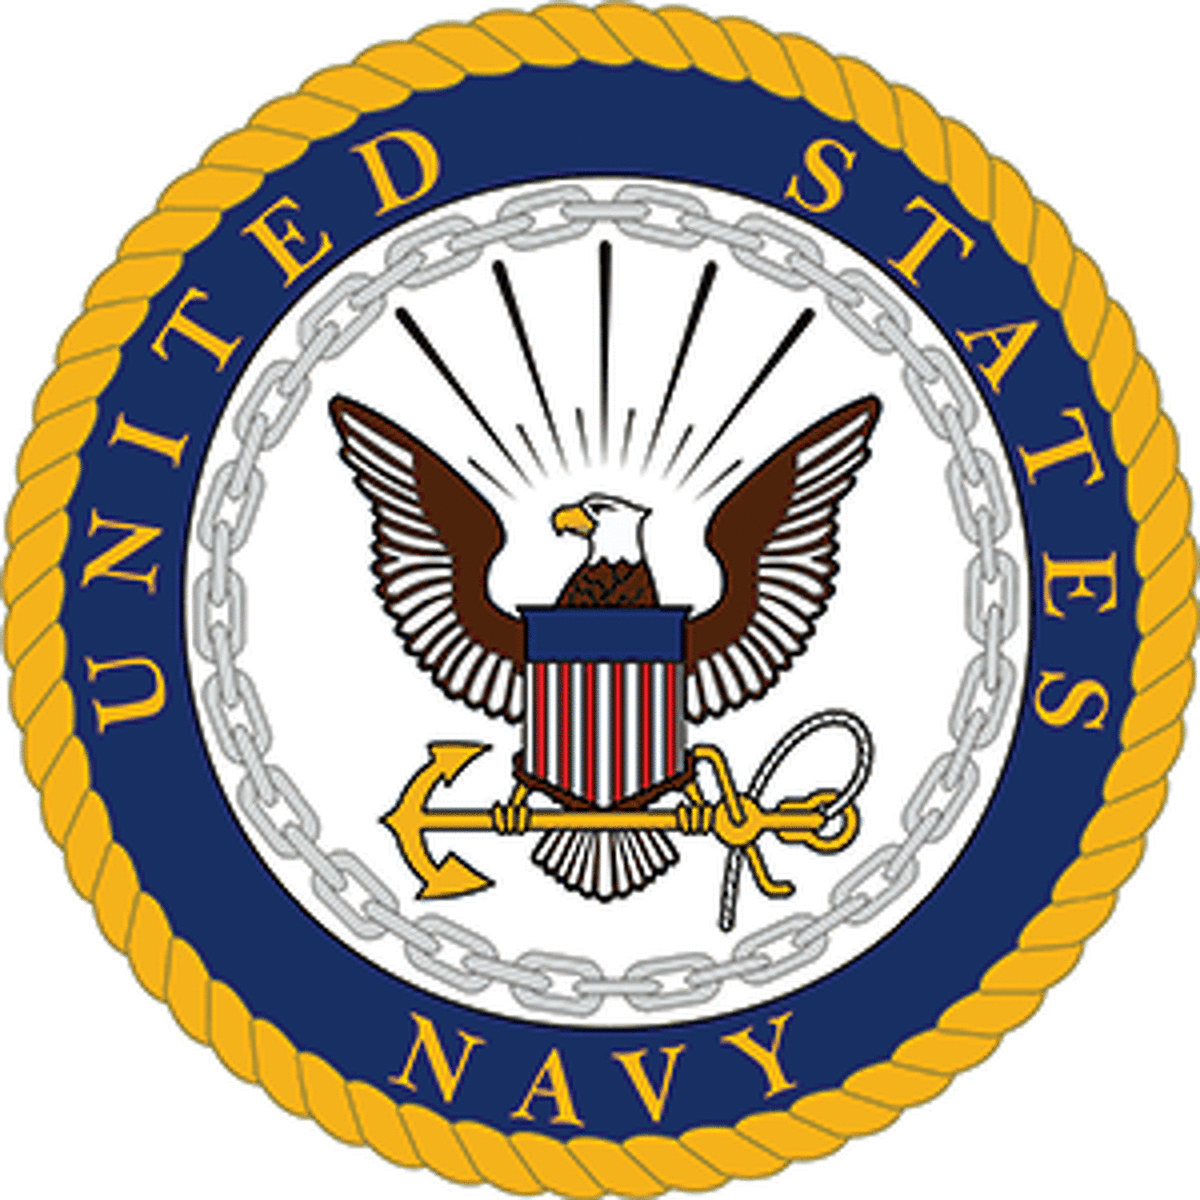 The Navy Emblem